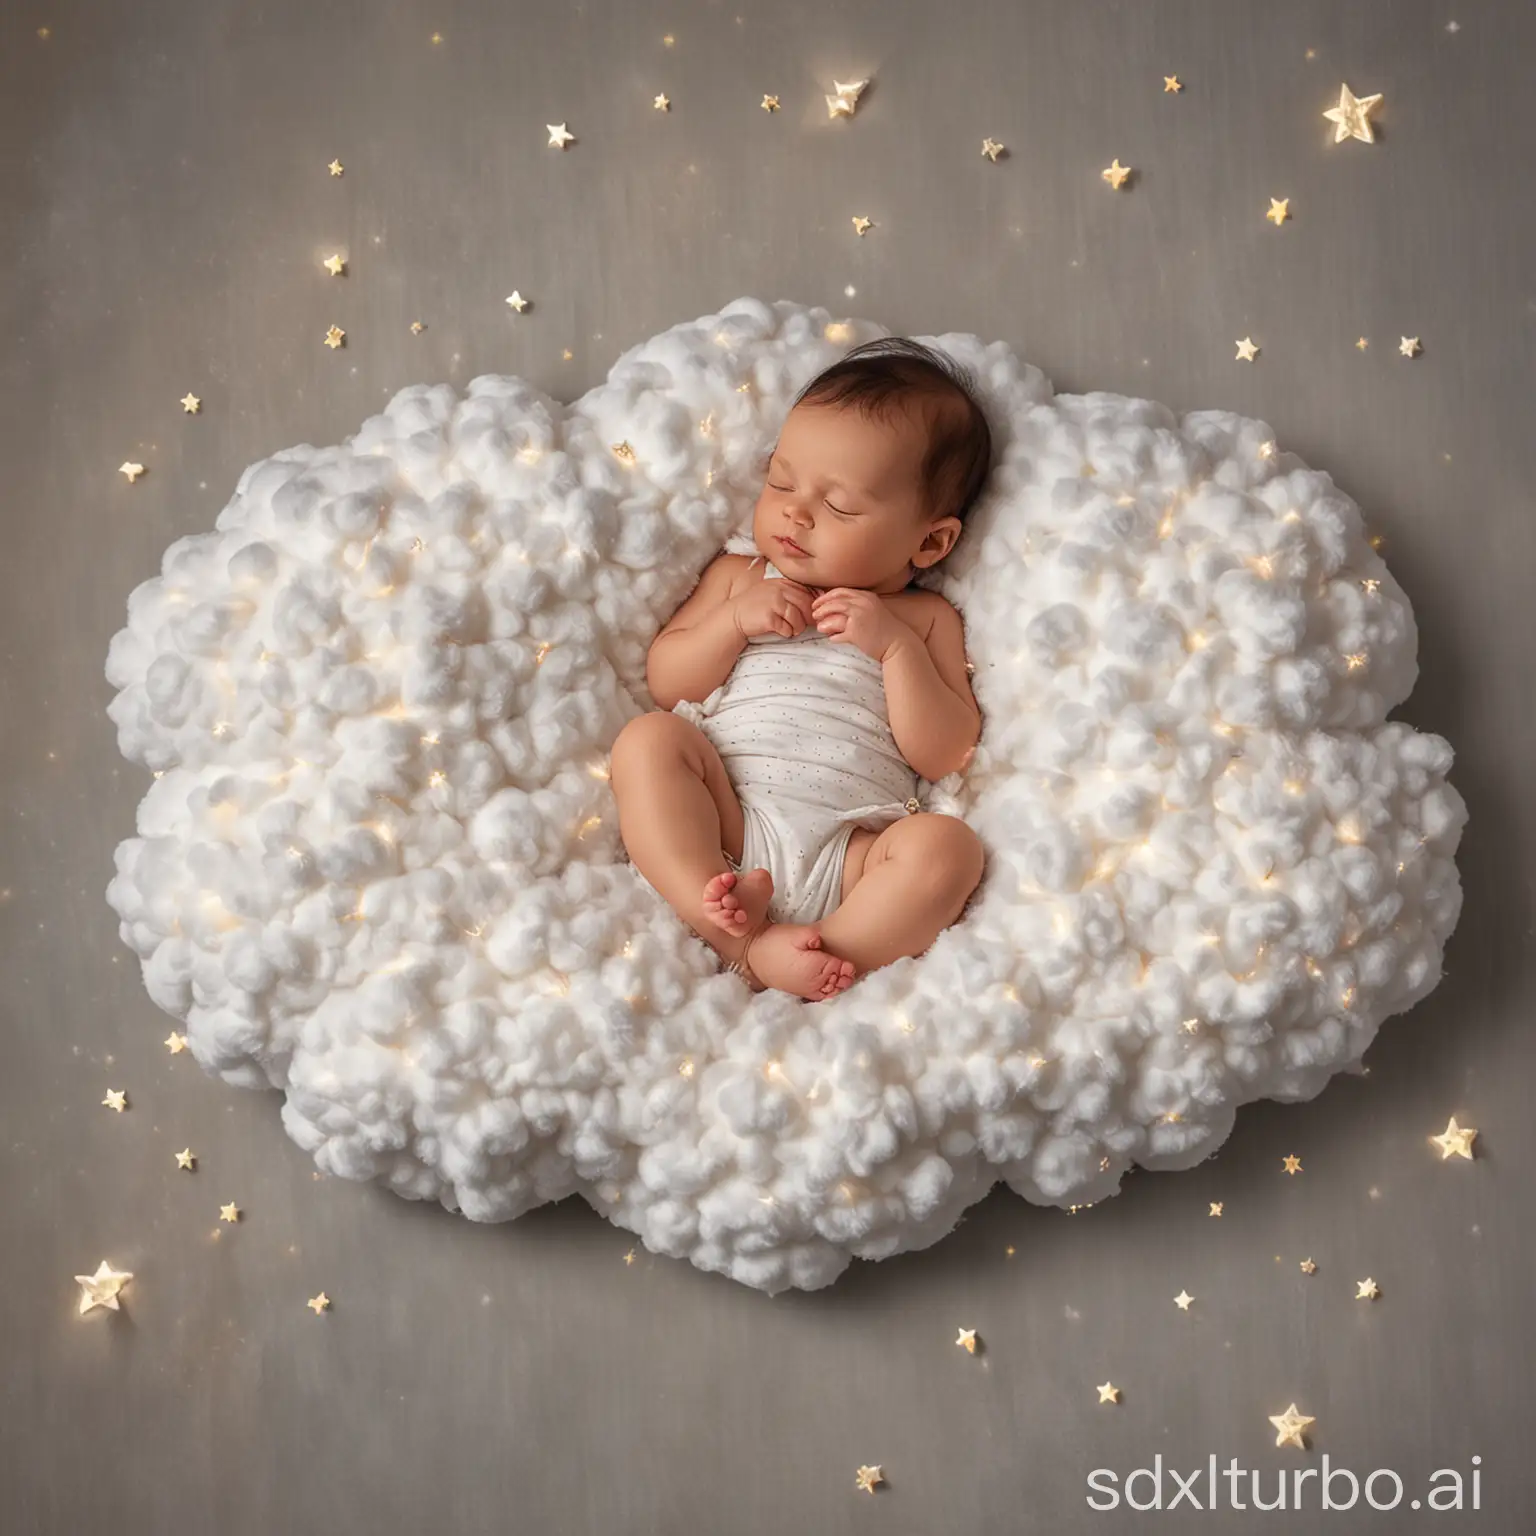 Das Baby liegt auf einem weichen, flauschigen Wolkenkissen, das sanft in den Himmel schwebt. Kleine Sternenfunken tanzen um die Wolke herum, und ein leises Lied der Sterne wiegt das Baby in den Schlaf.